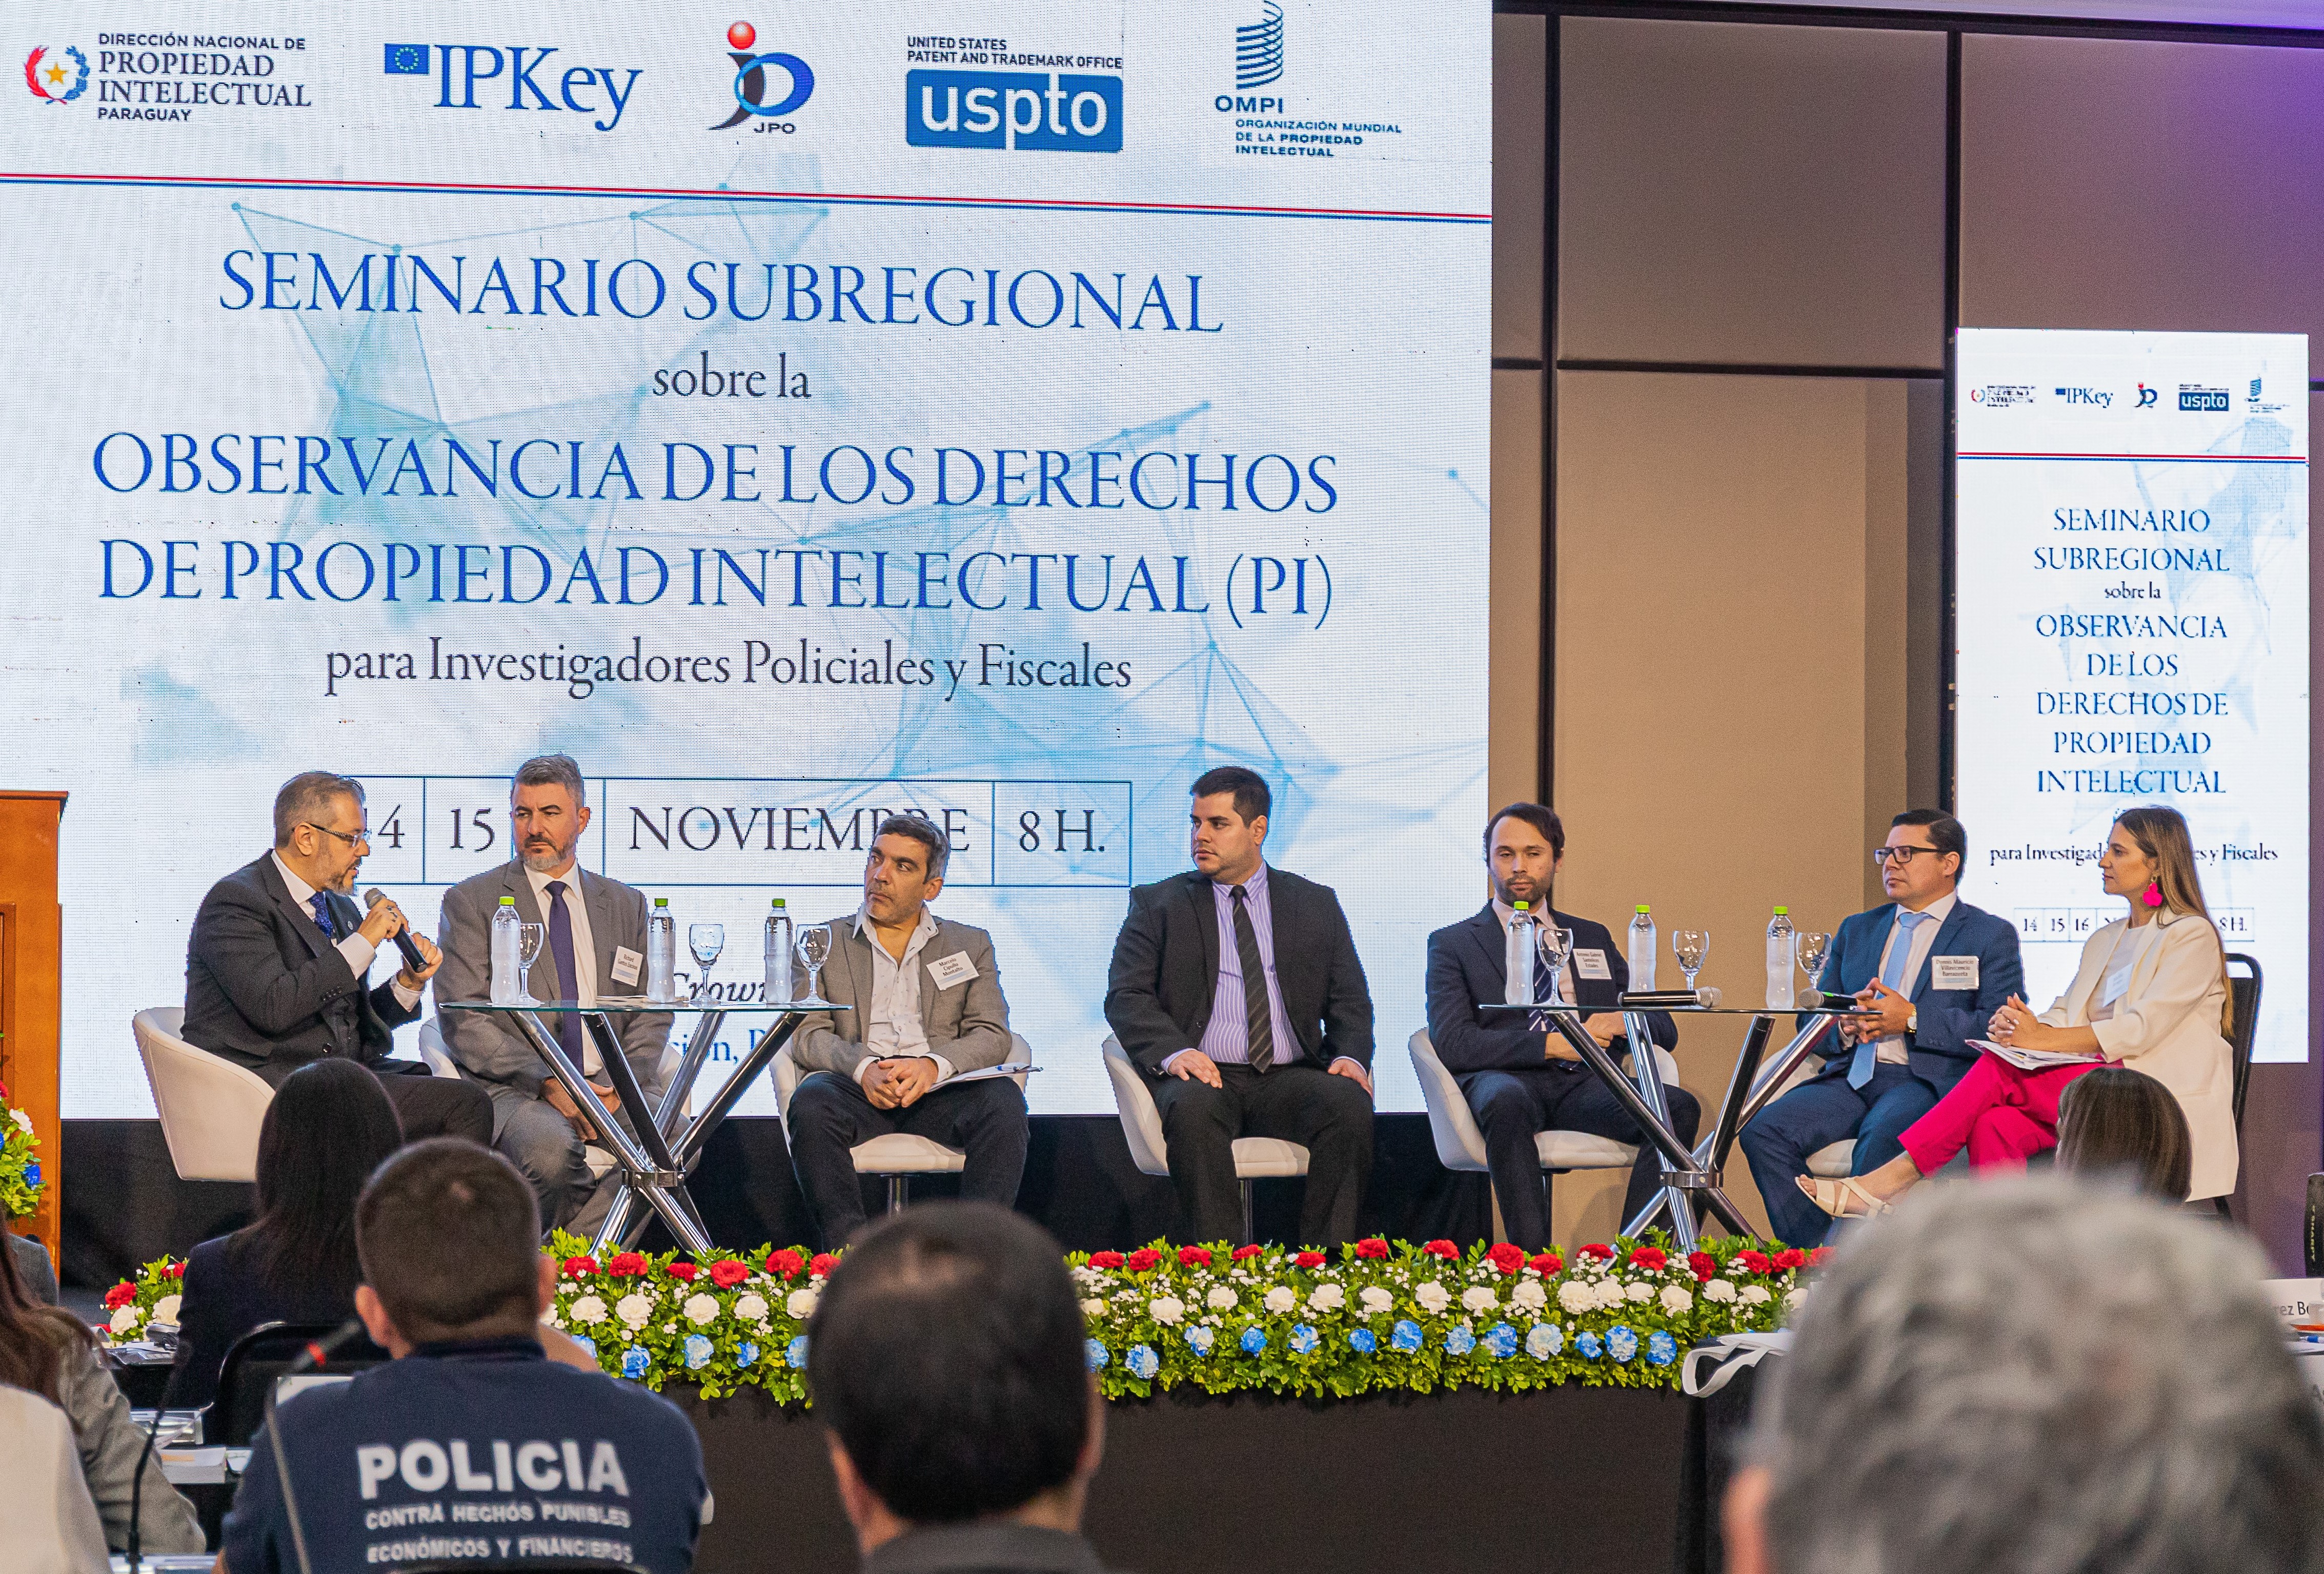 Retos y soluciones en la investigación de delitos contra la PI fueron temas del seminario Internacional celebrado en Paraguay